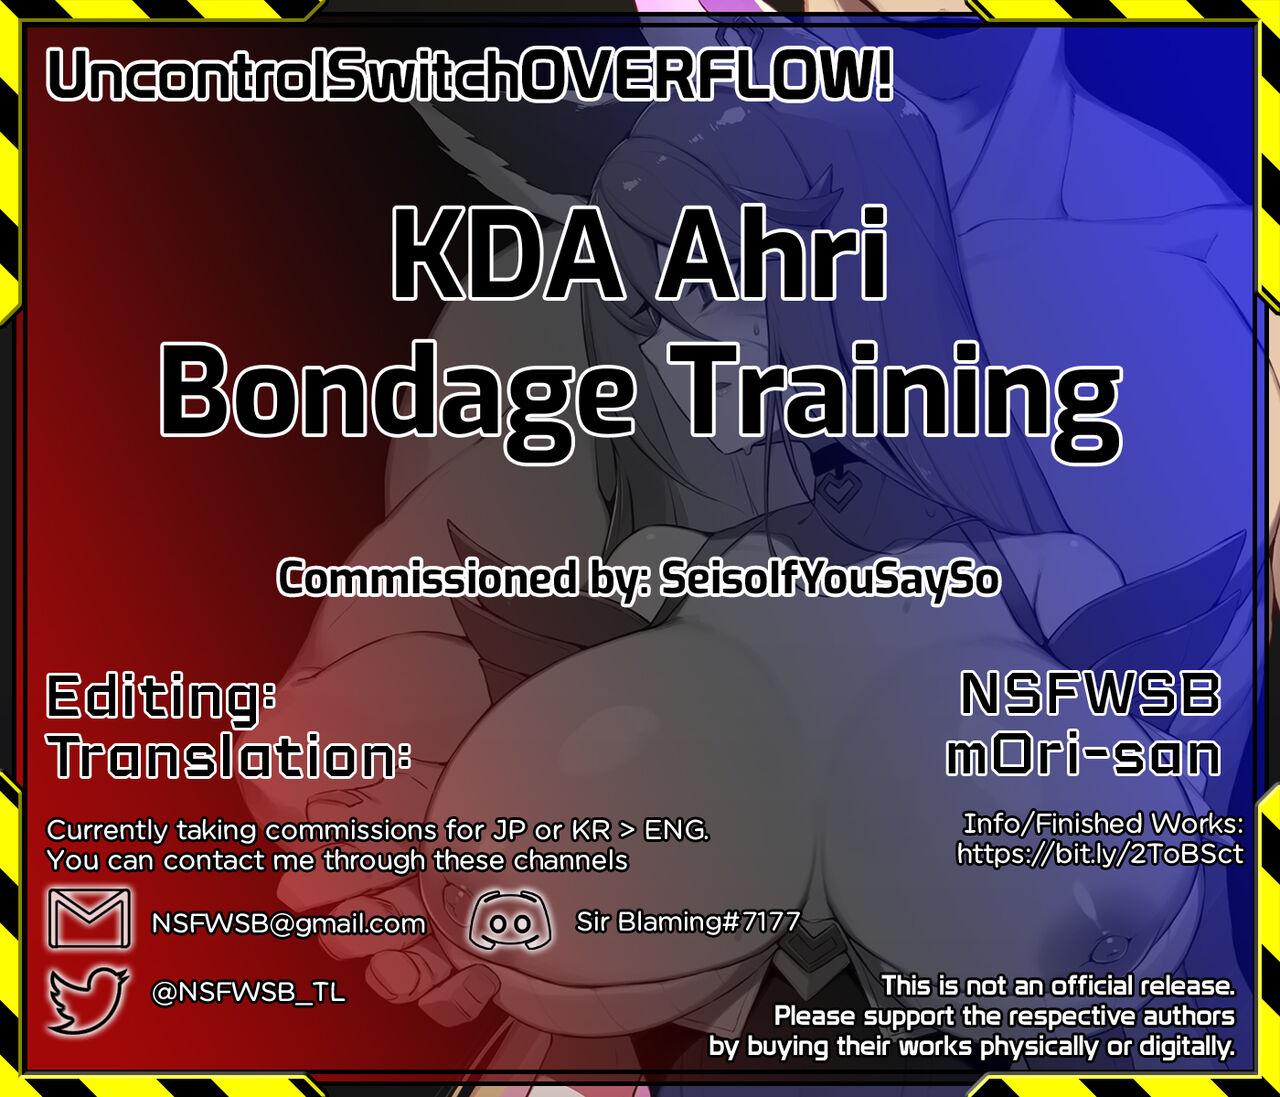 KDA Ahri Bondage Training 6